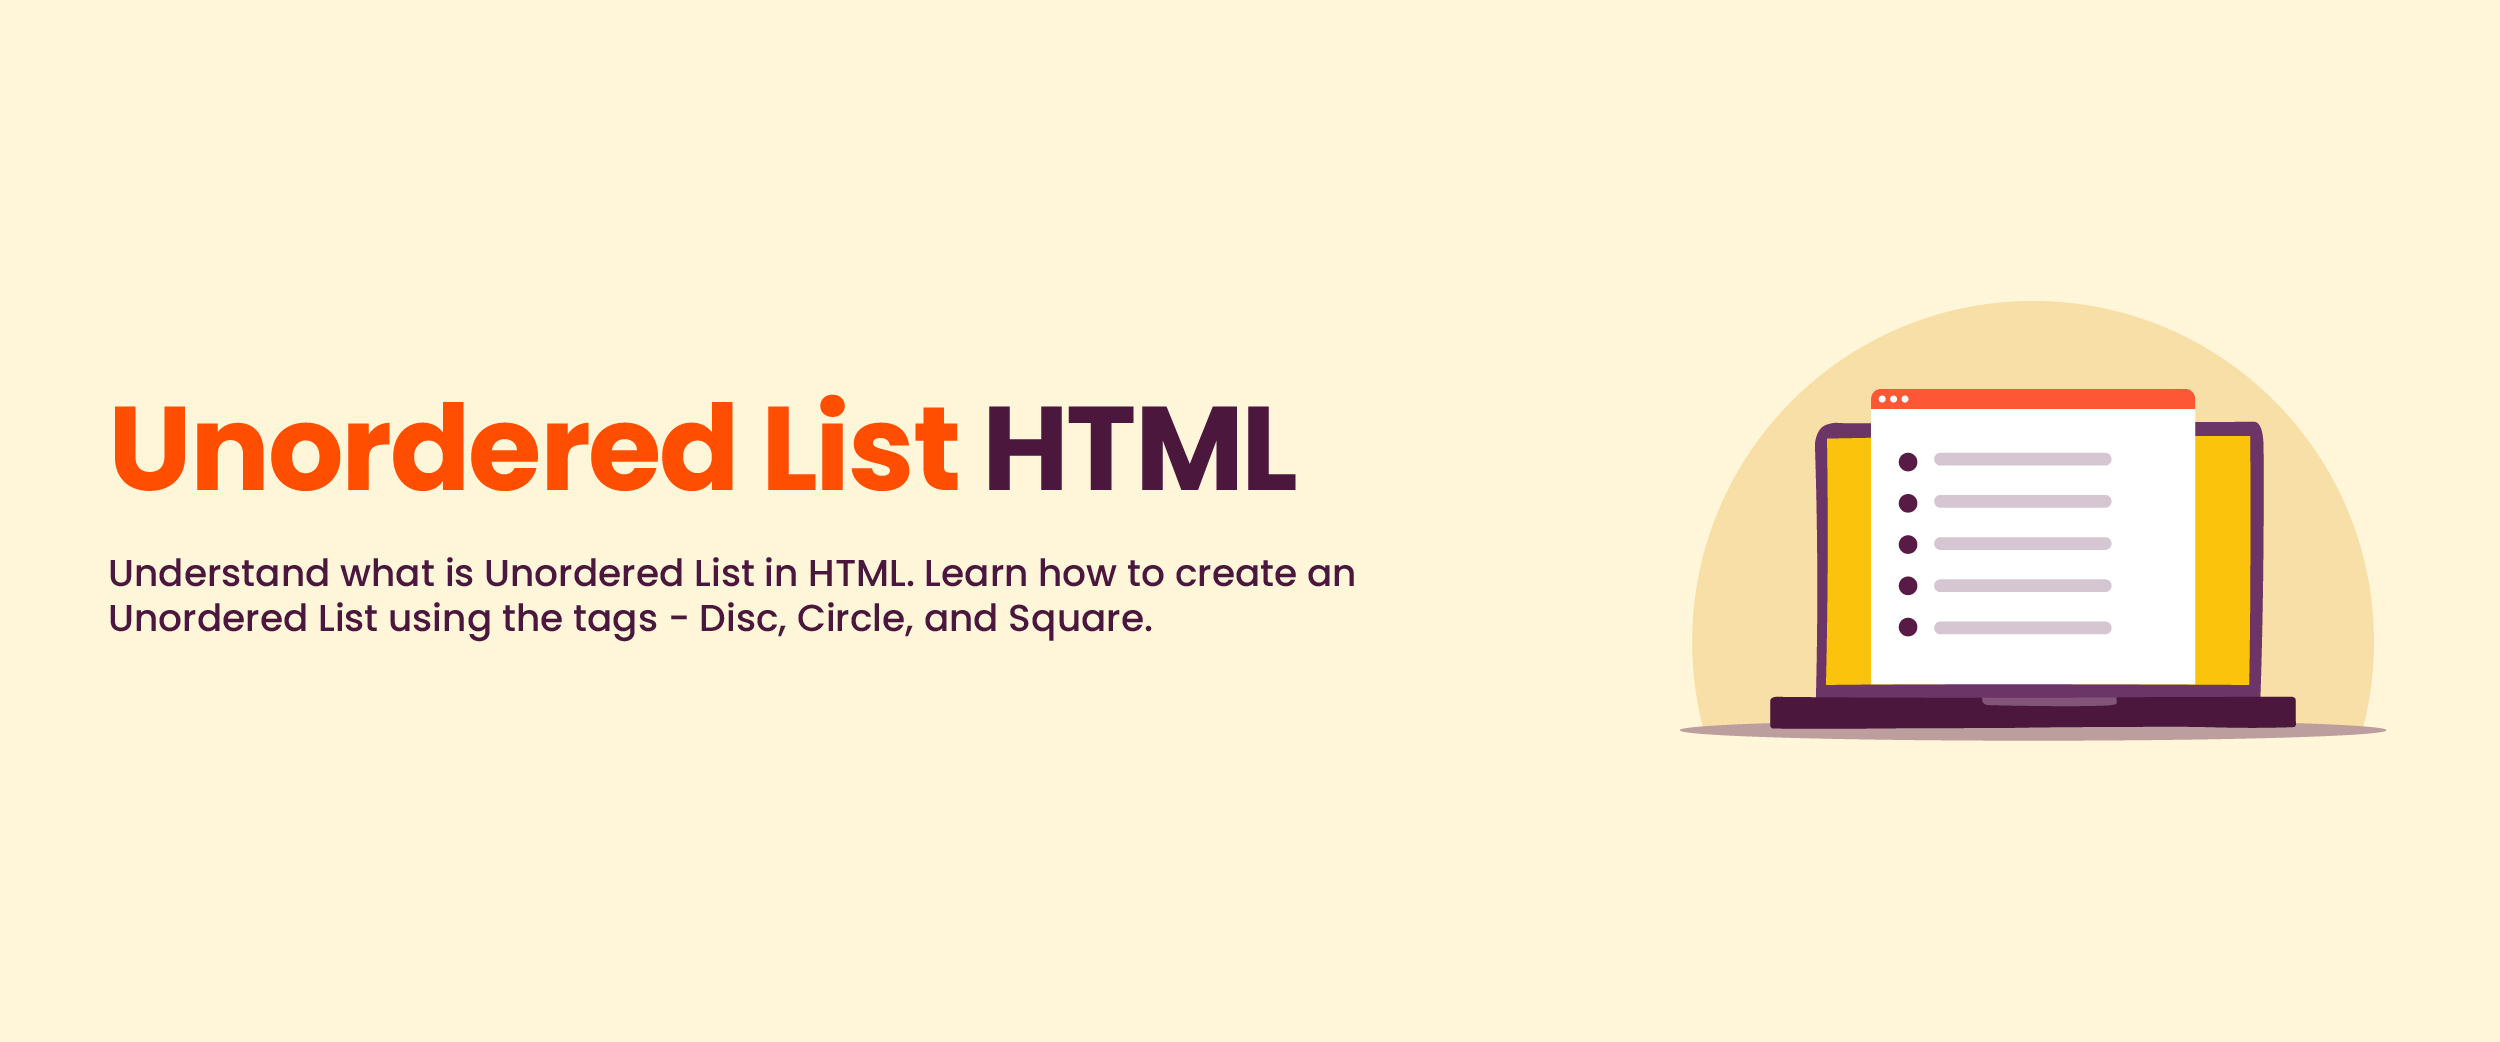 Unordered List in HTML